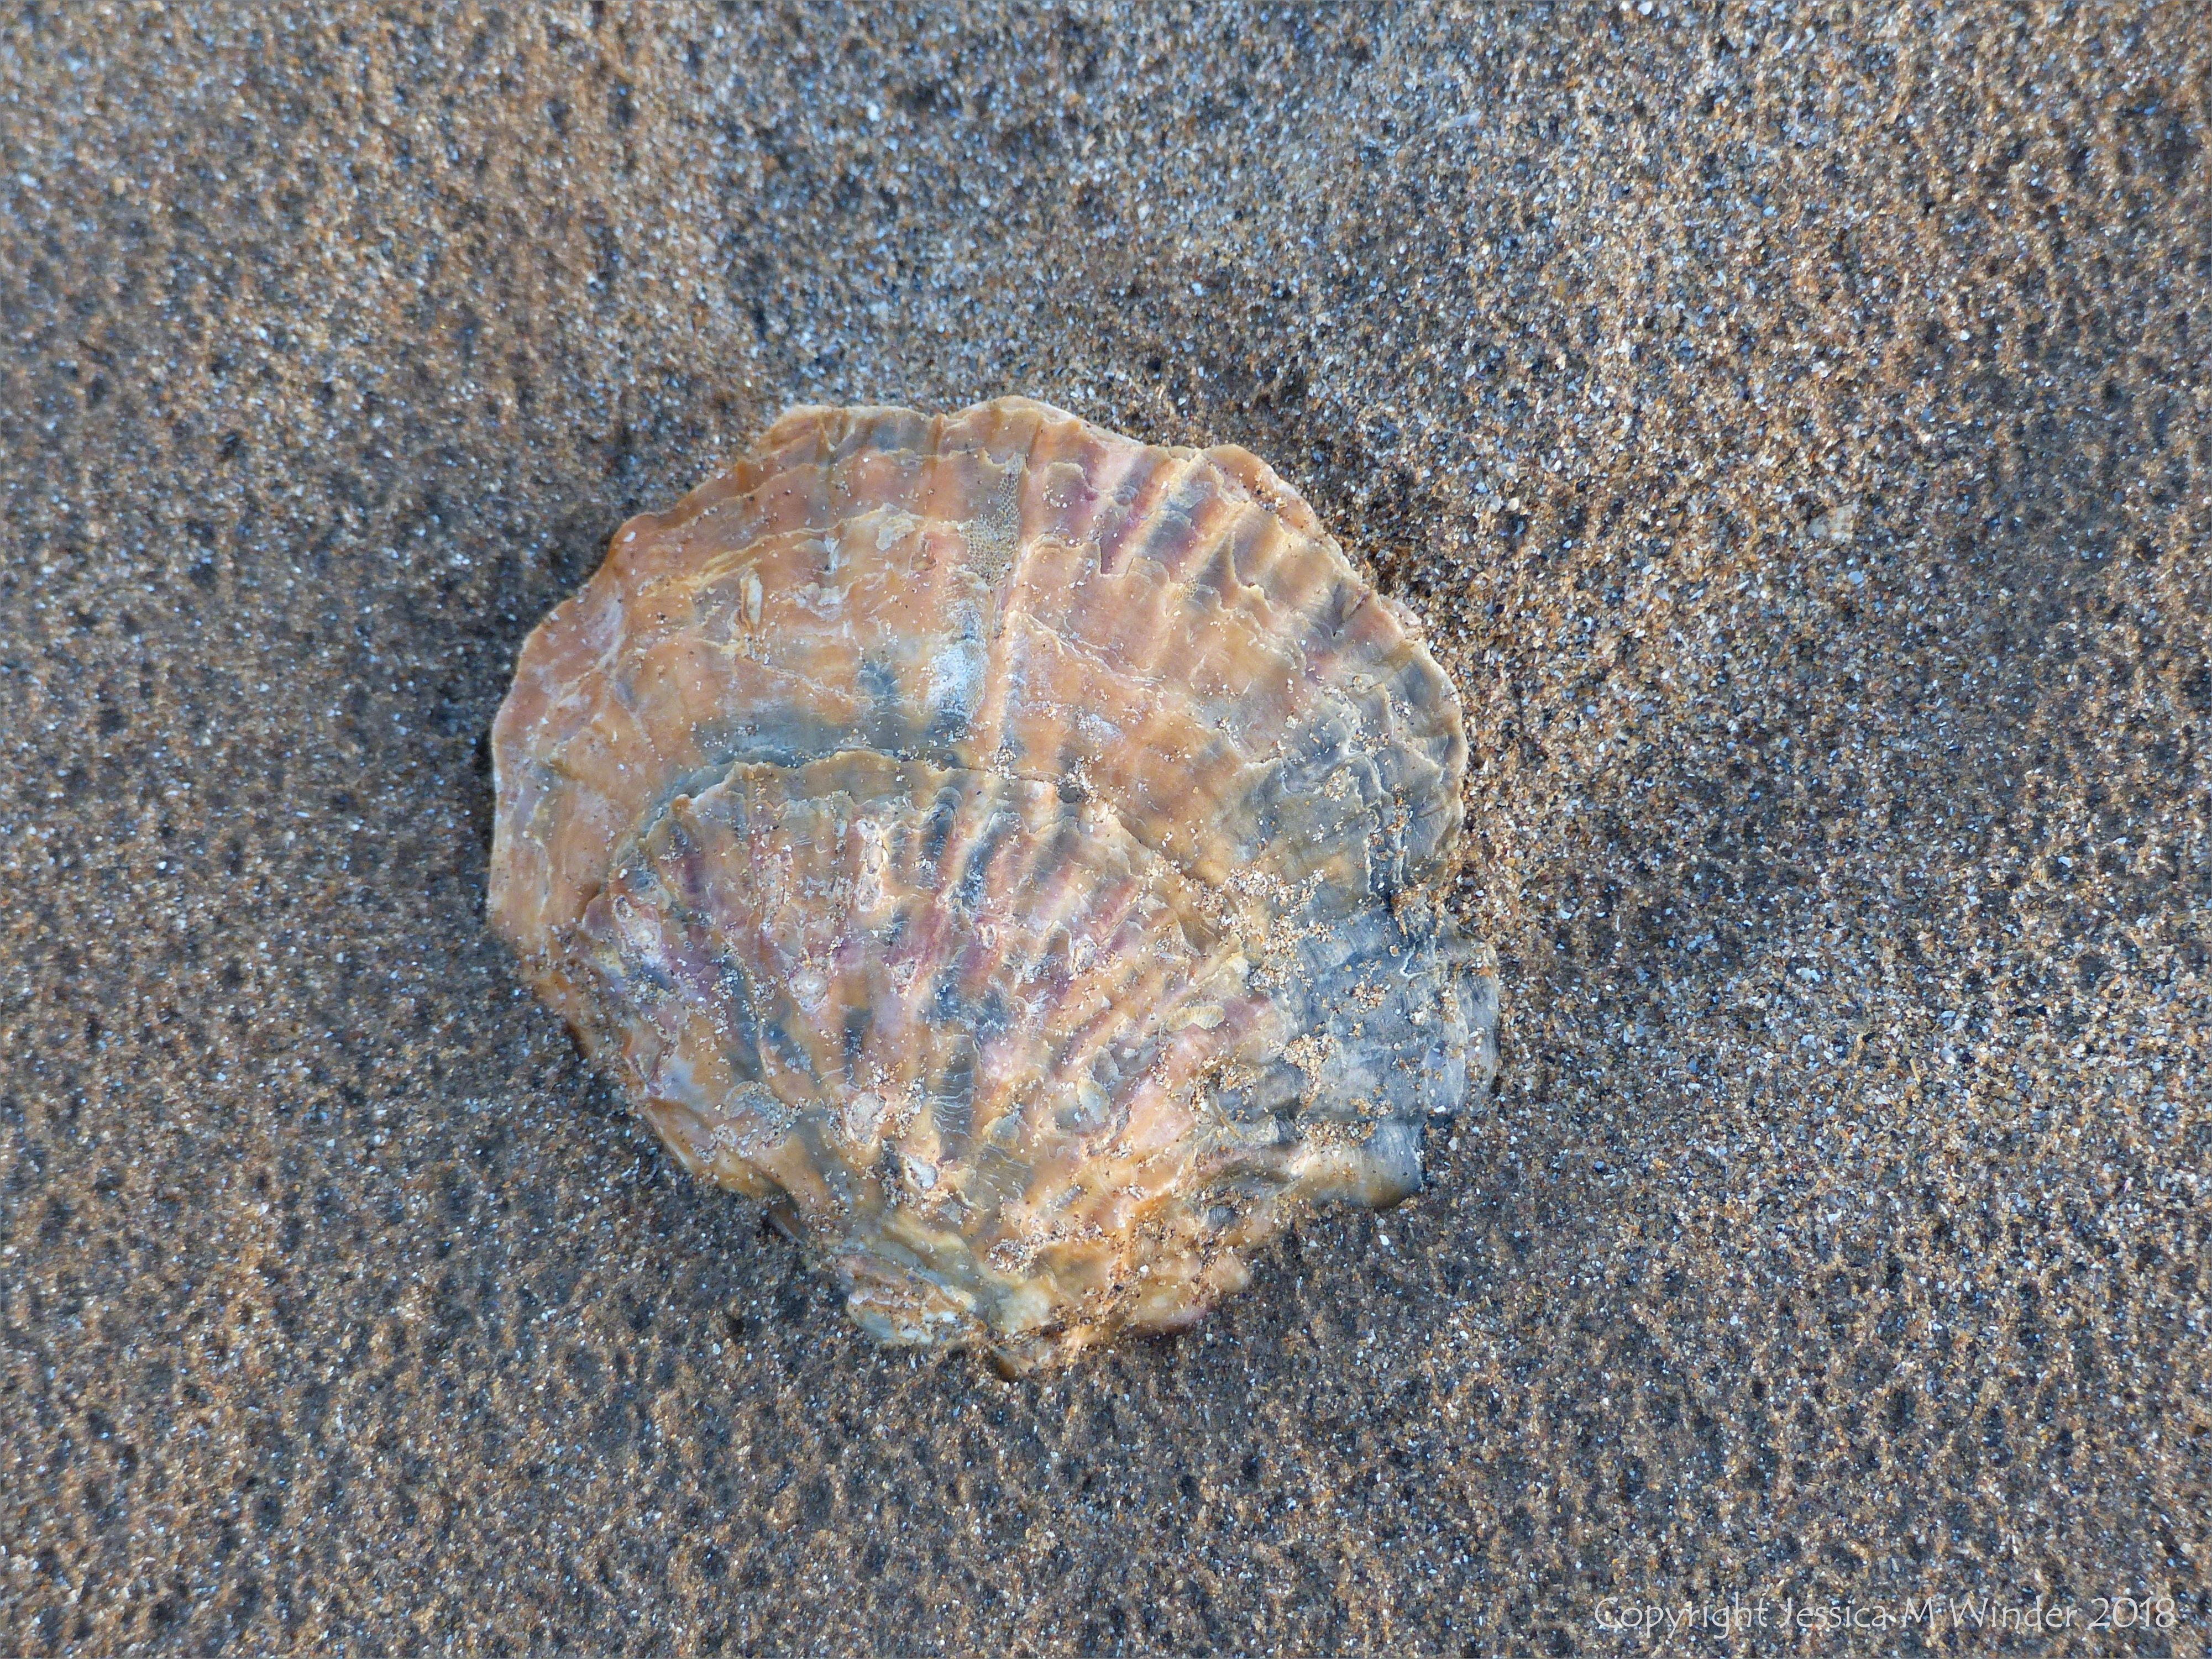 Beach-worn oyster shell on a sandy beach